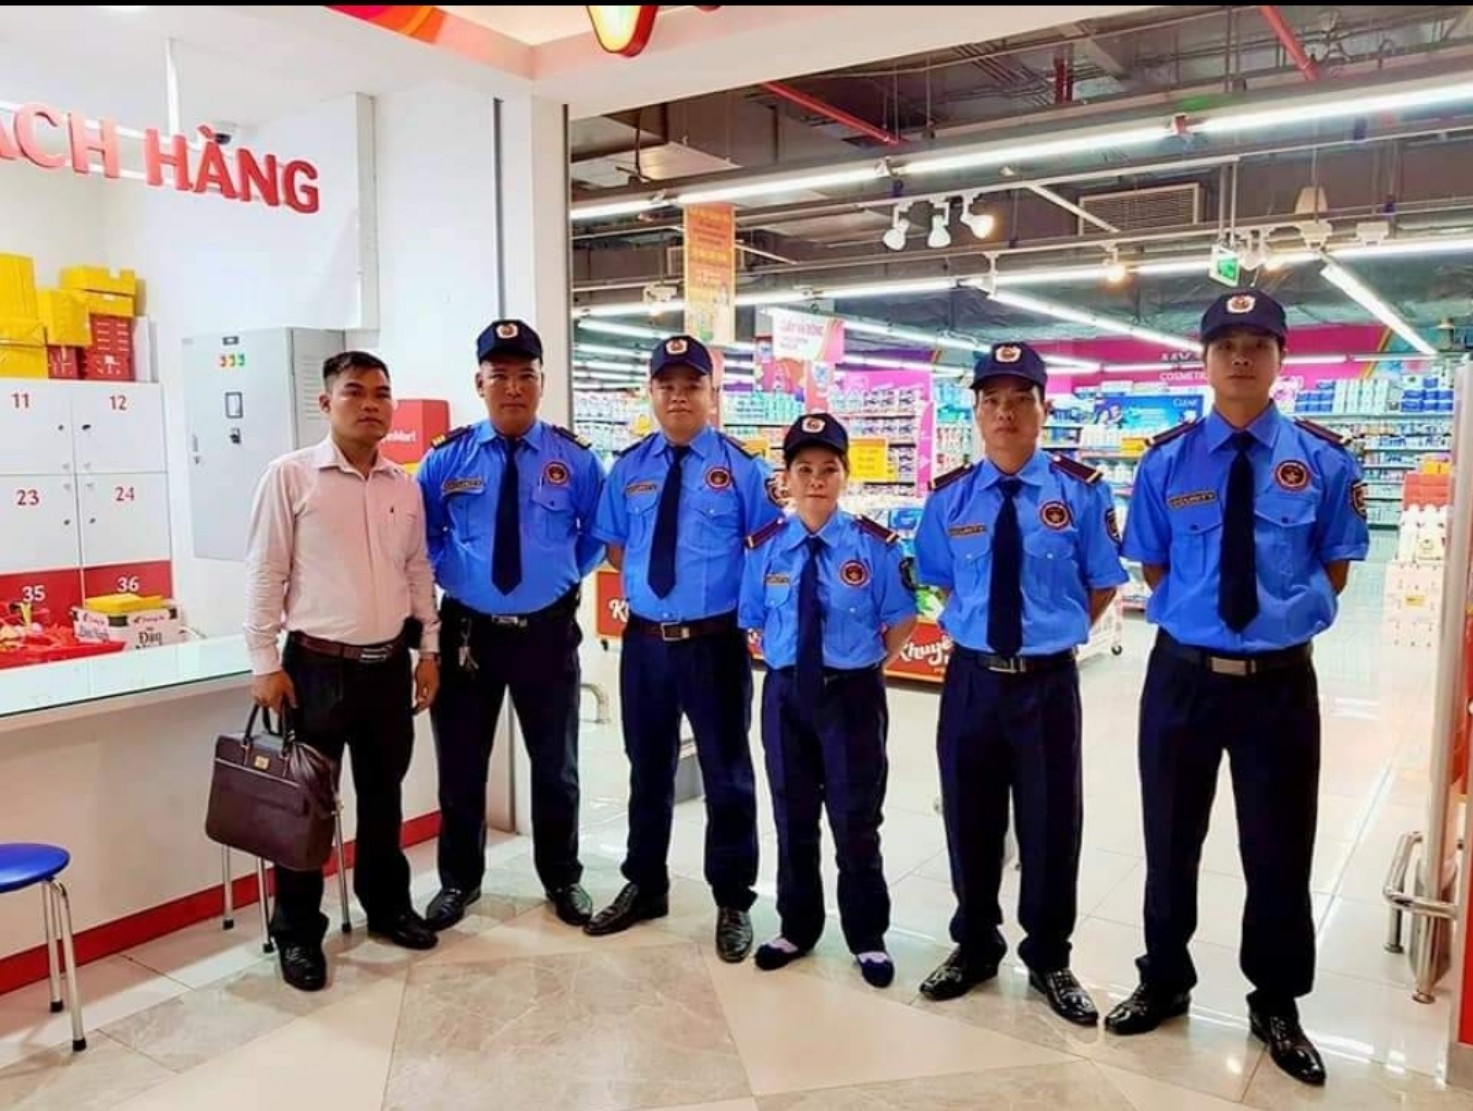 Bảo vệ yếu nhân tại Đà Nẵng: Đảm bảo an toàn tối đa